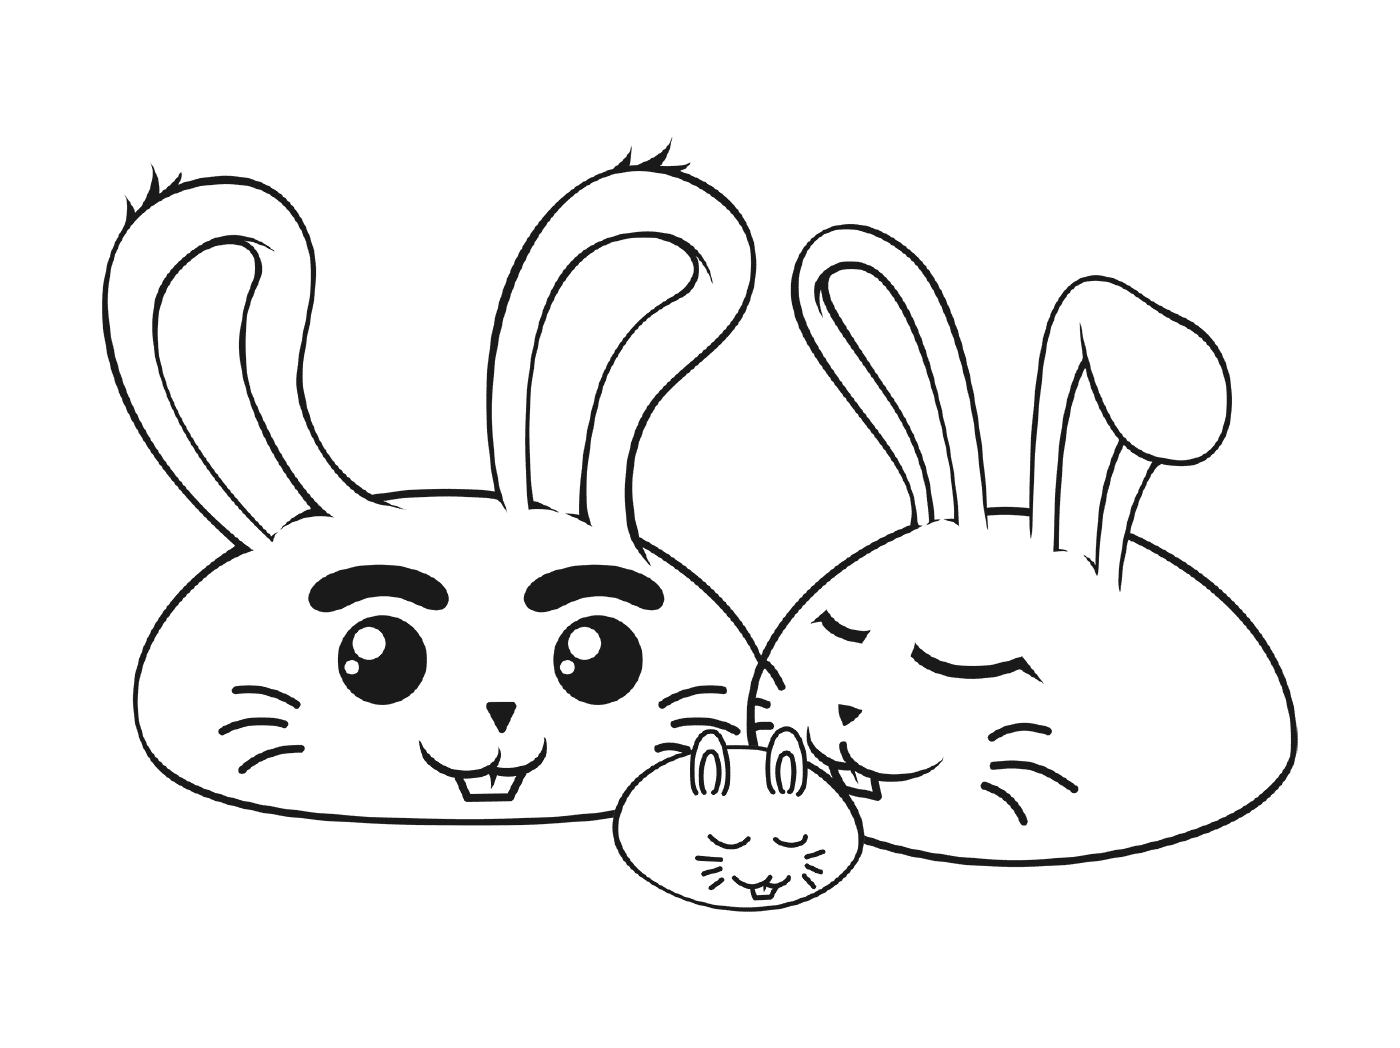  أسرة الأرنب 